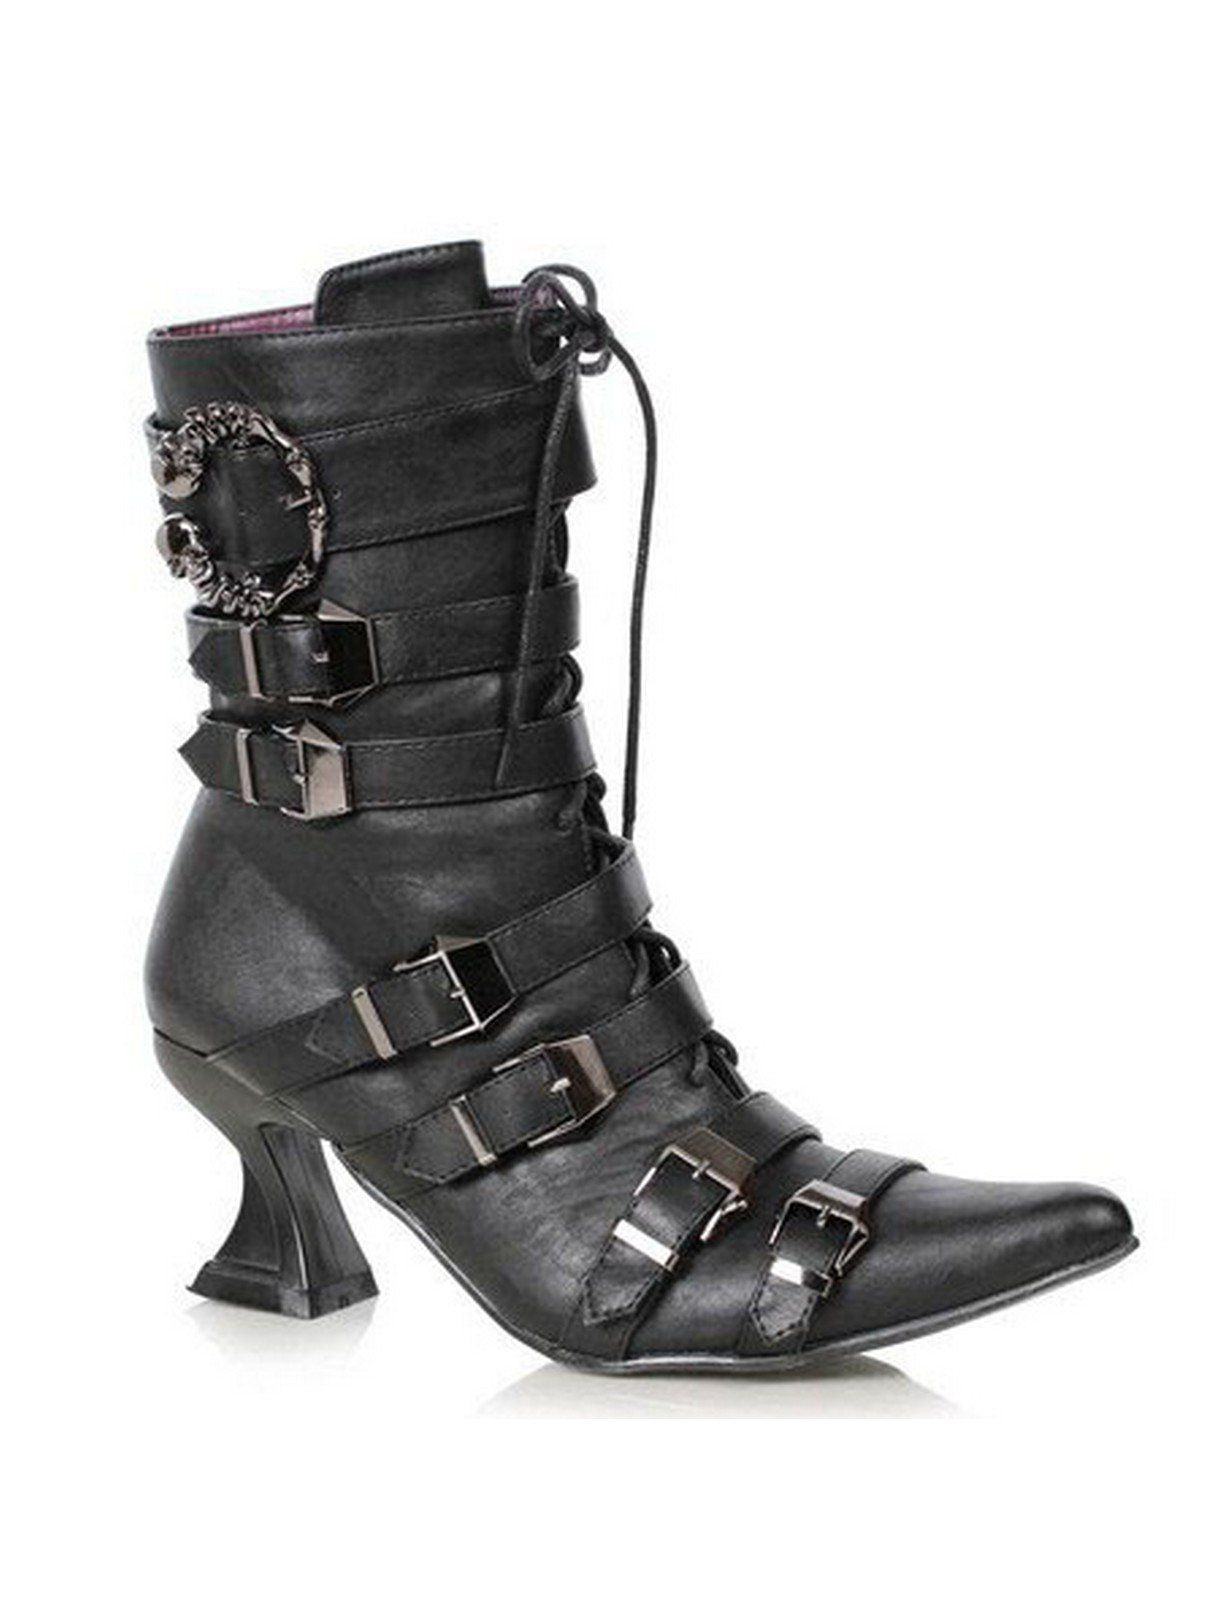 ELLIE SHOES - Women's Rosita Witch Ankle Boots - Walmart.com - Walmart.com